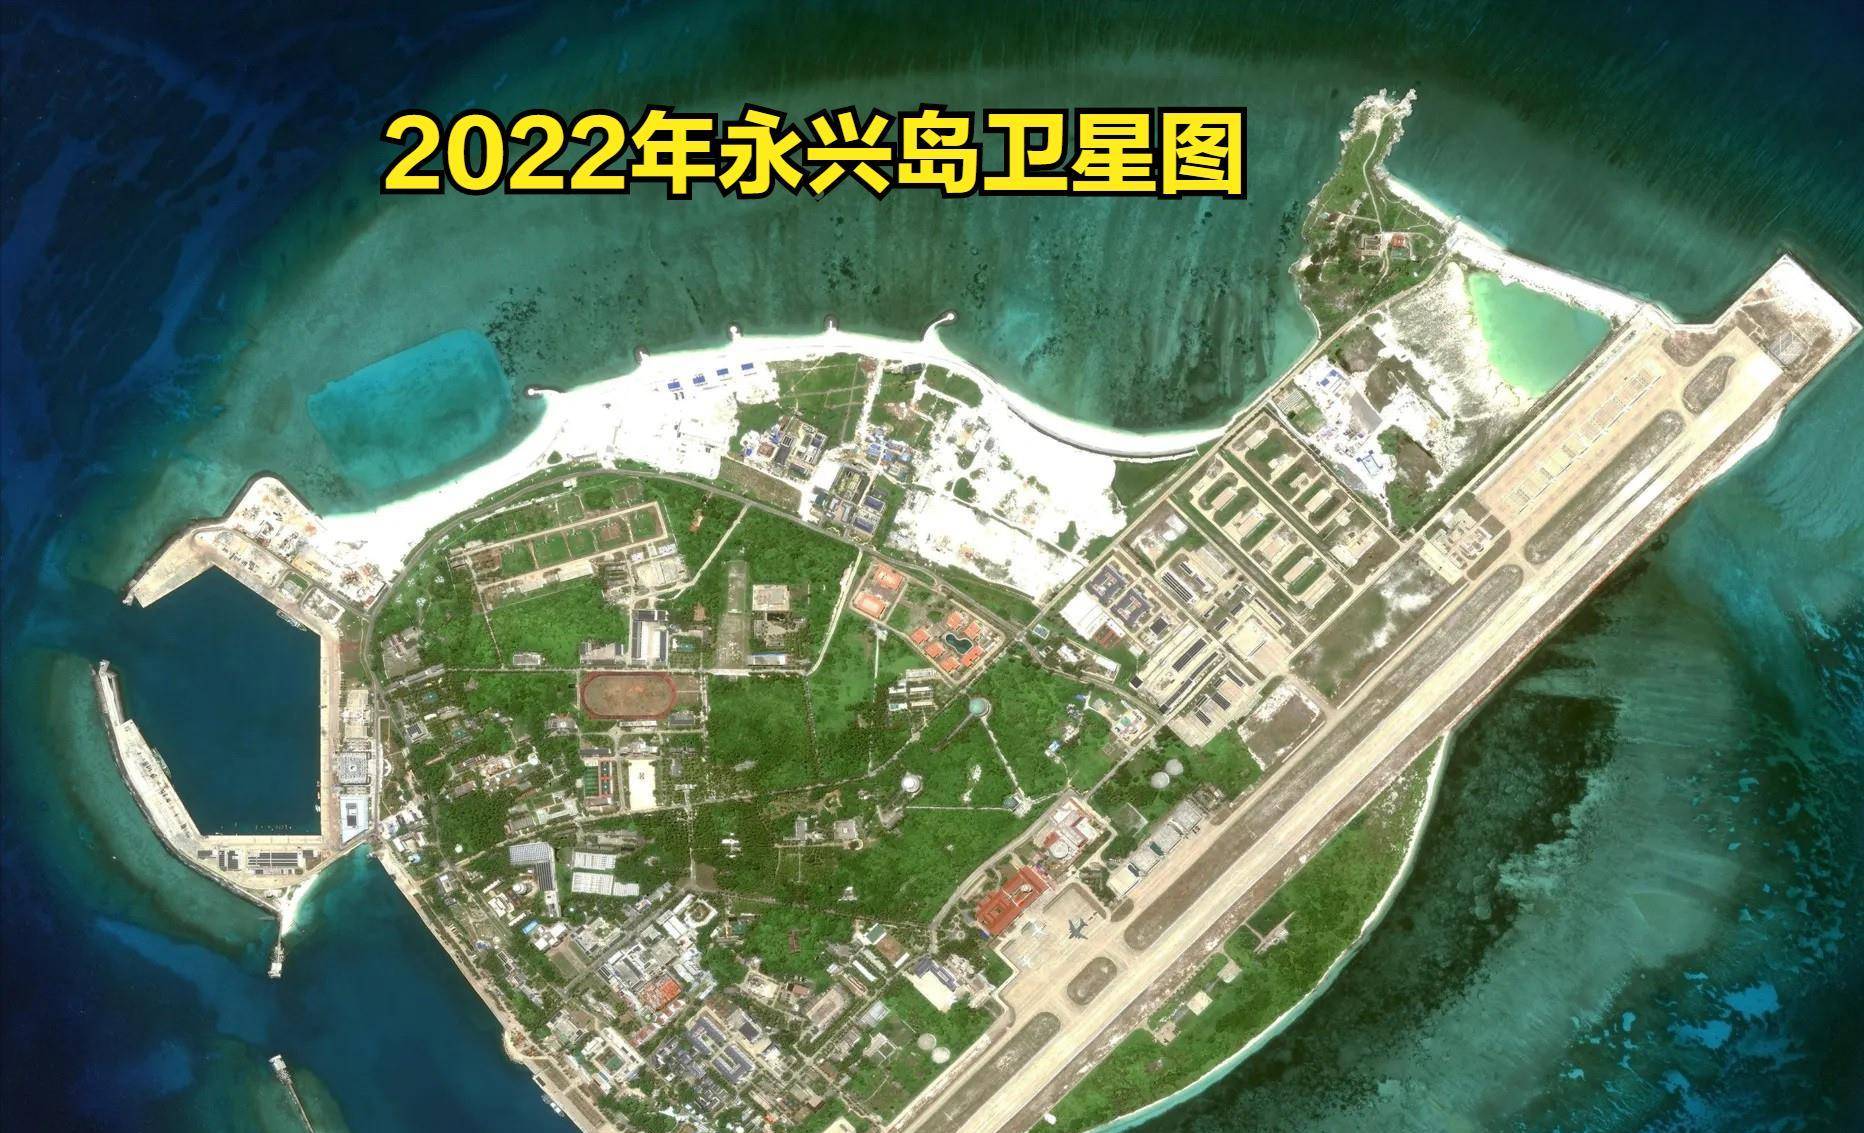 永兴岛建设历程,新增面积超过2个太平岛,越来越有城市范了